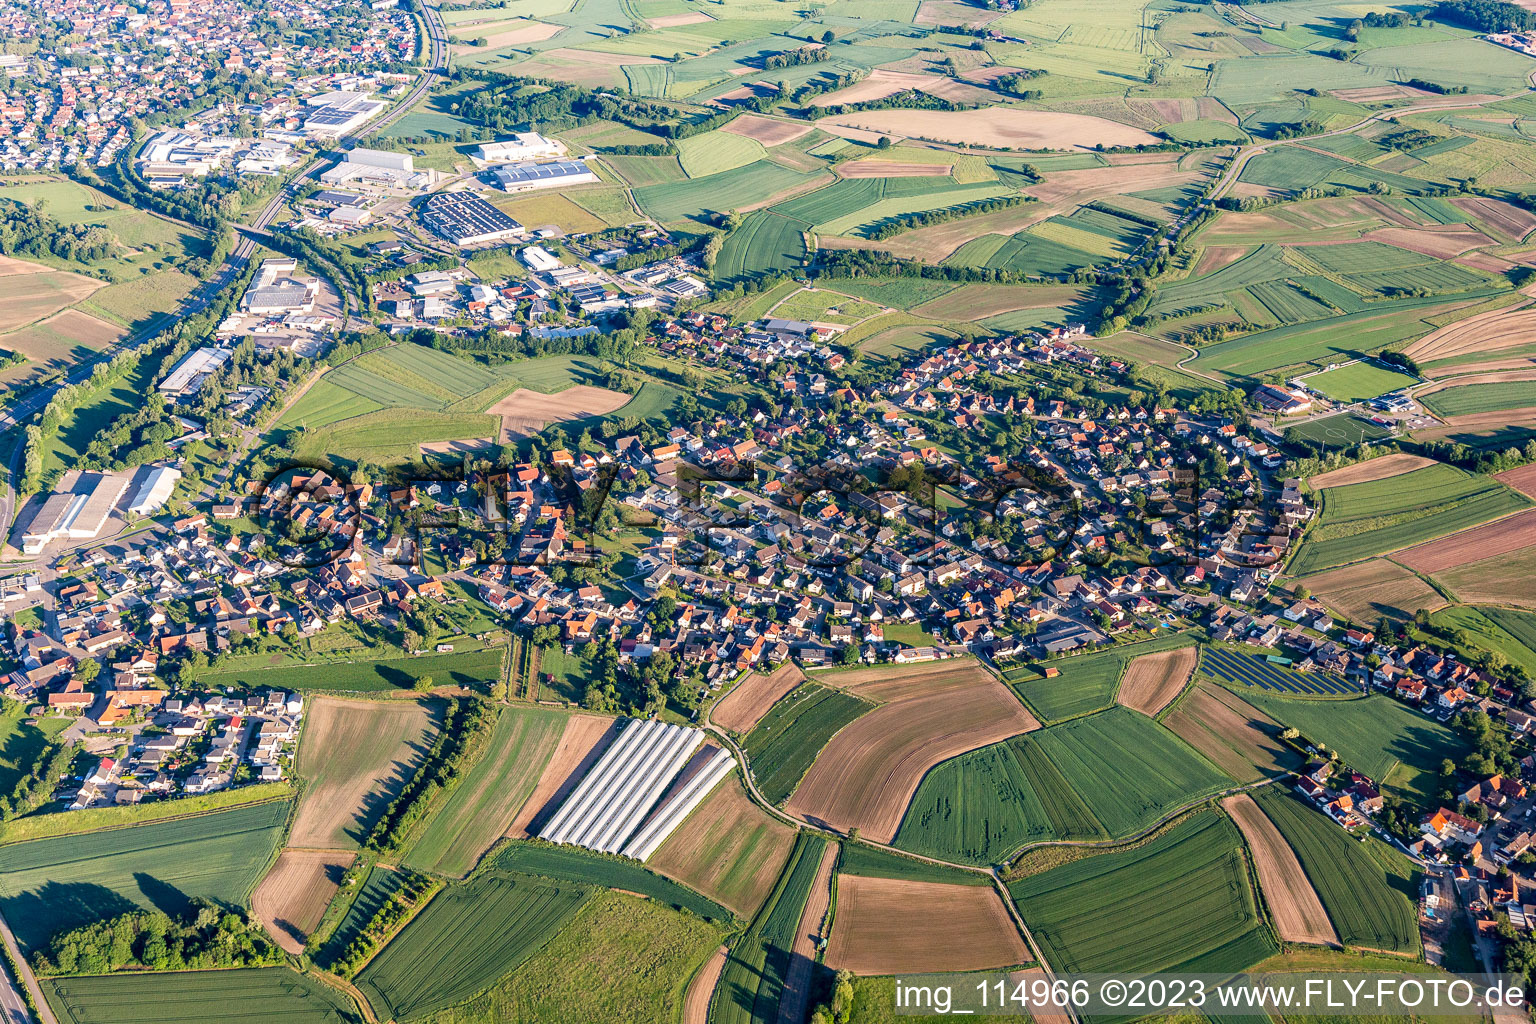 Vue aérienne de Vue de la commune en bordure des champs agricoles et des zones agricoles en sable à Willstätt dans le département Bade-Wurtemberg, Allemagne